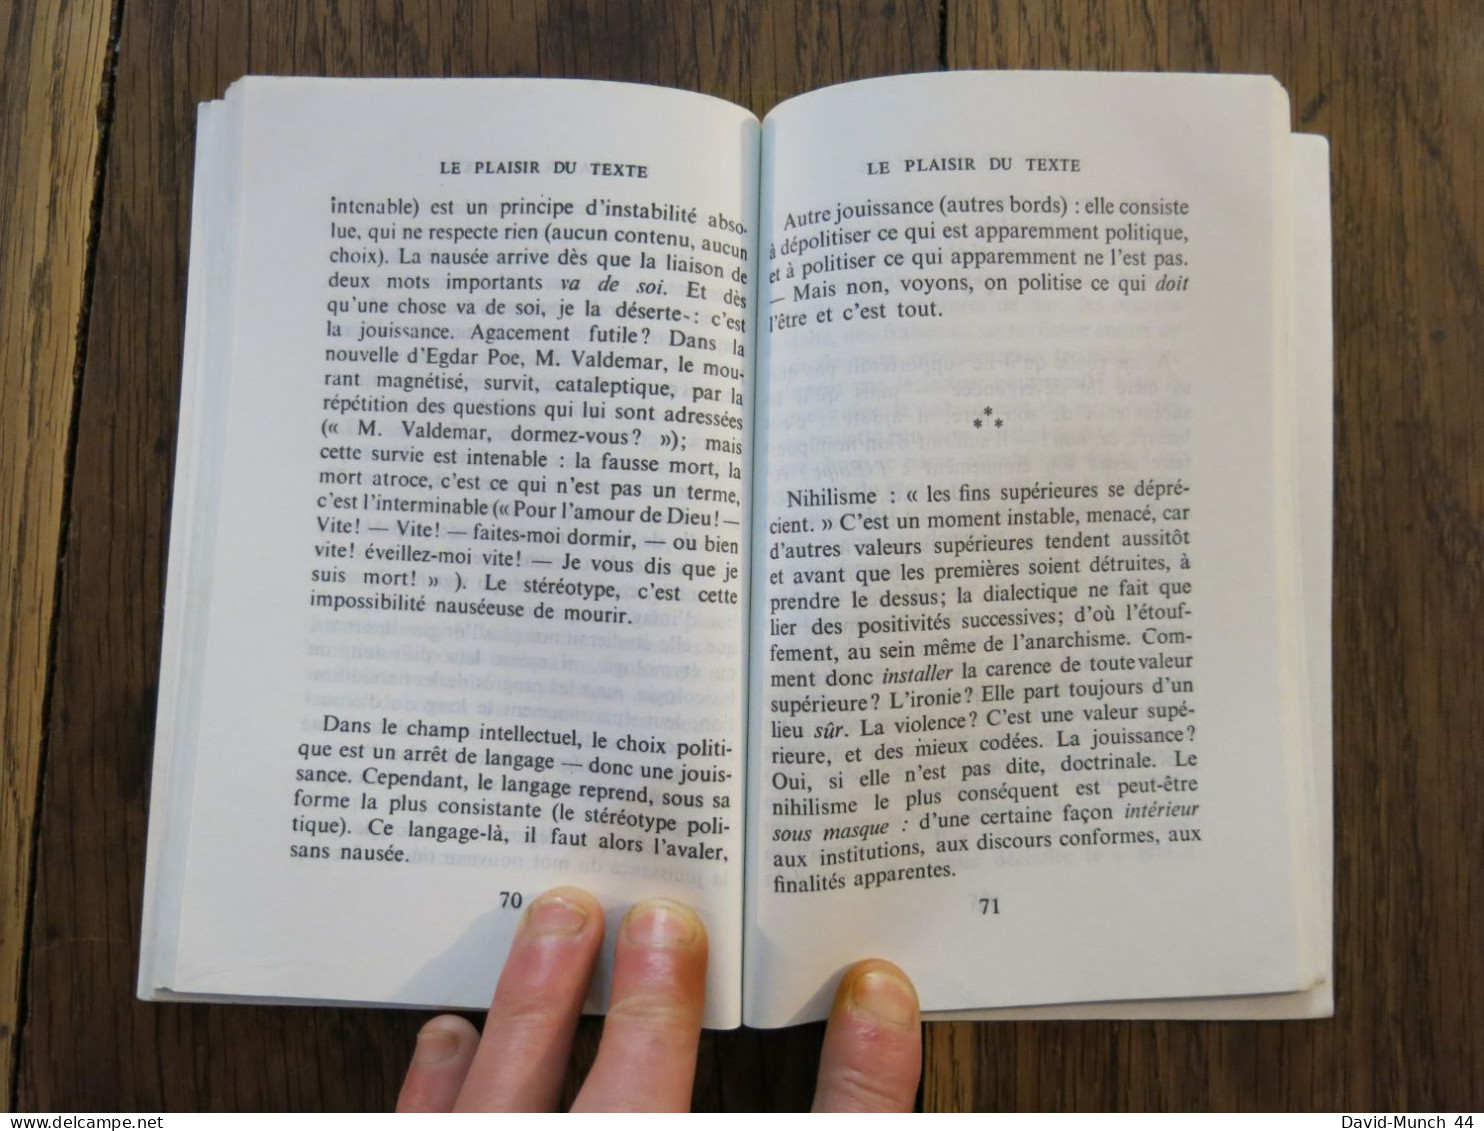 Le plaisir du texte de Roland Barthes. Editions du Seul, Points. 1973